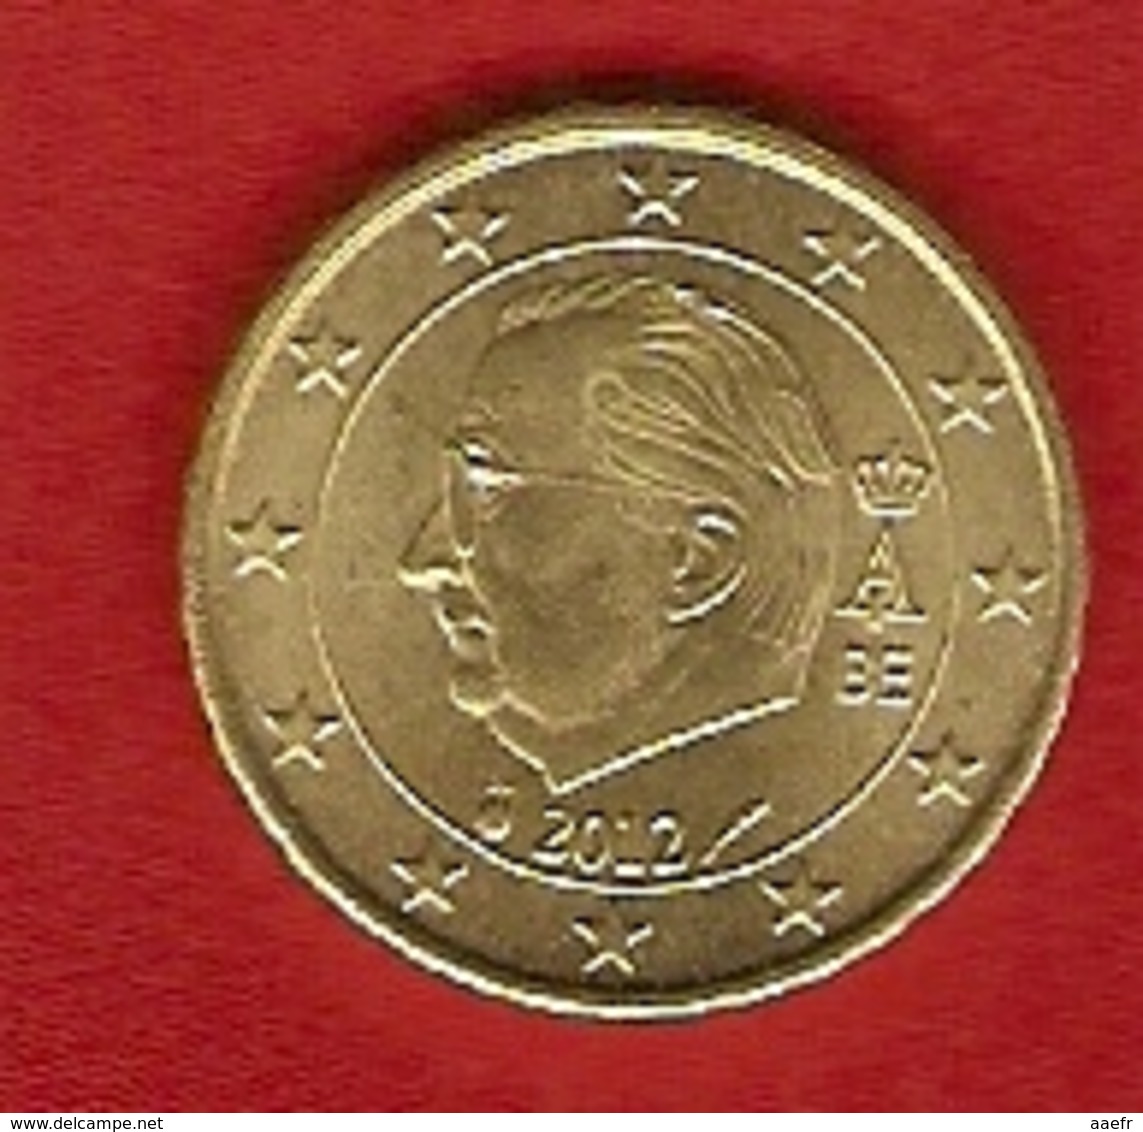 Belgique 2012 - 10 Cents - Albert II - Belgique